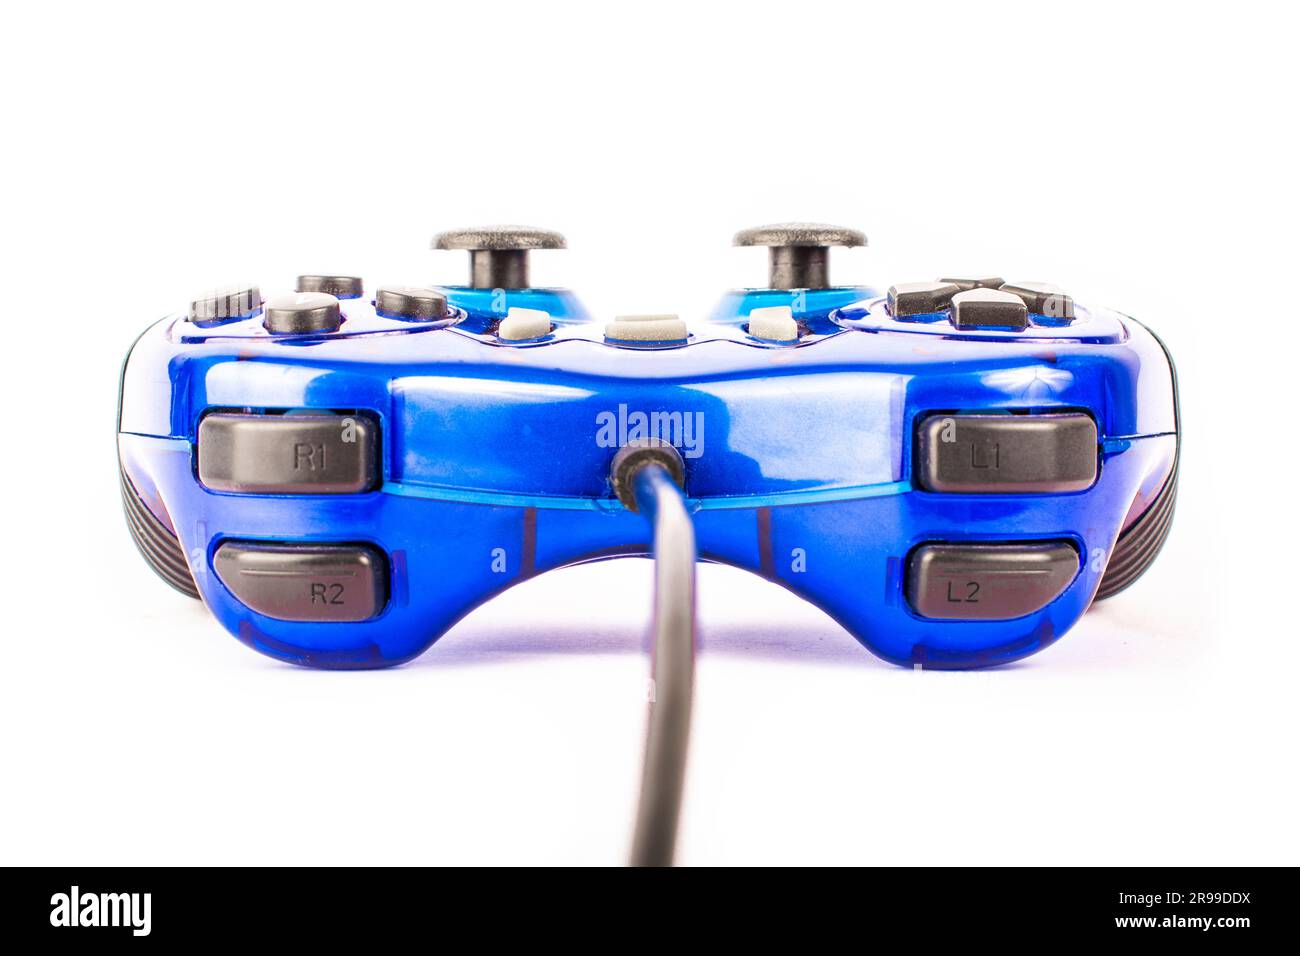 Der isolierte blaue Joystick für Controller und Videospiel auf weißem Hintergrund Stockfoto